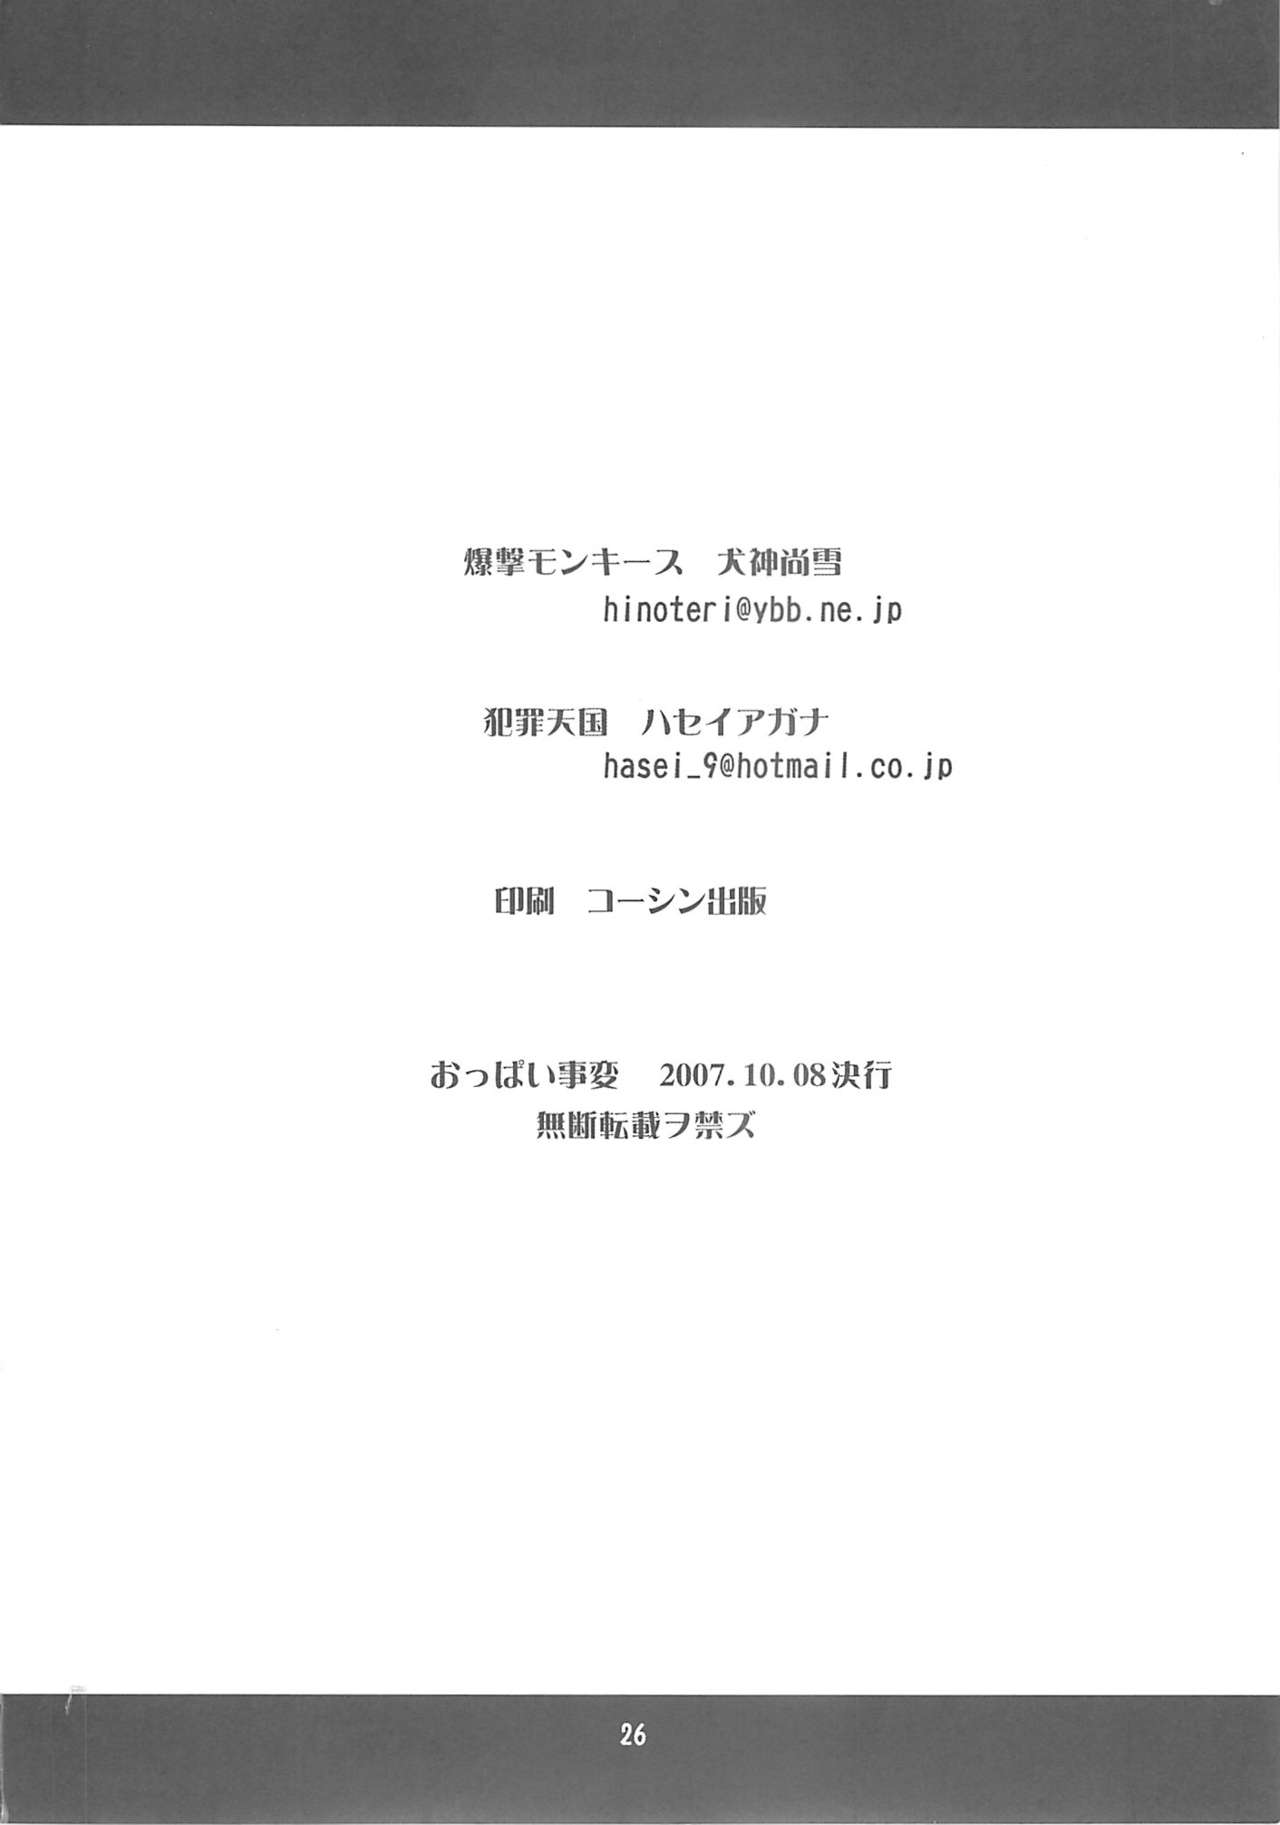 [Hanzai Tengoku + Bakugeki Monkeys] Oppai Jihen (Code Geass) [犯罪天国+爆撃モンキース] おっぱい事変 (コードギアス)